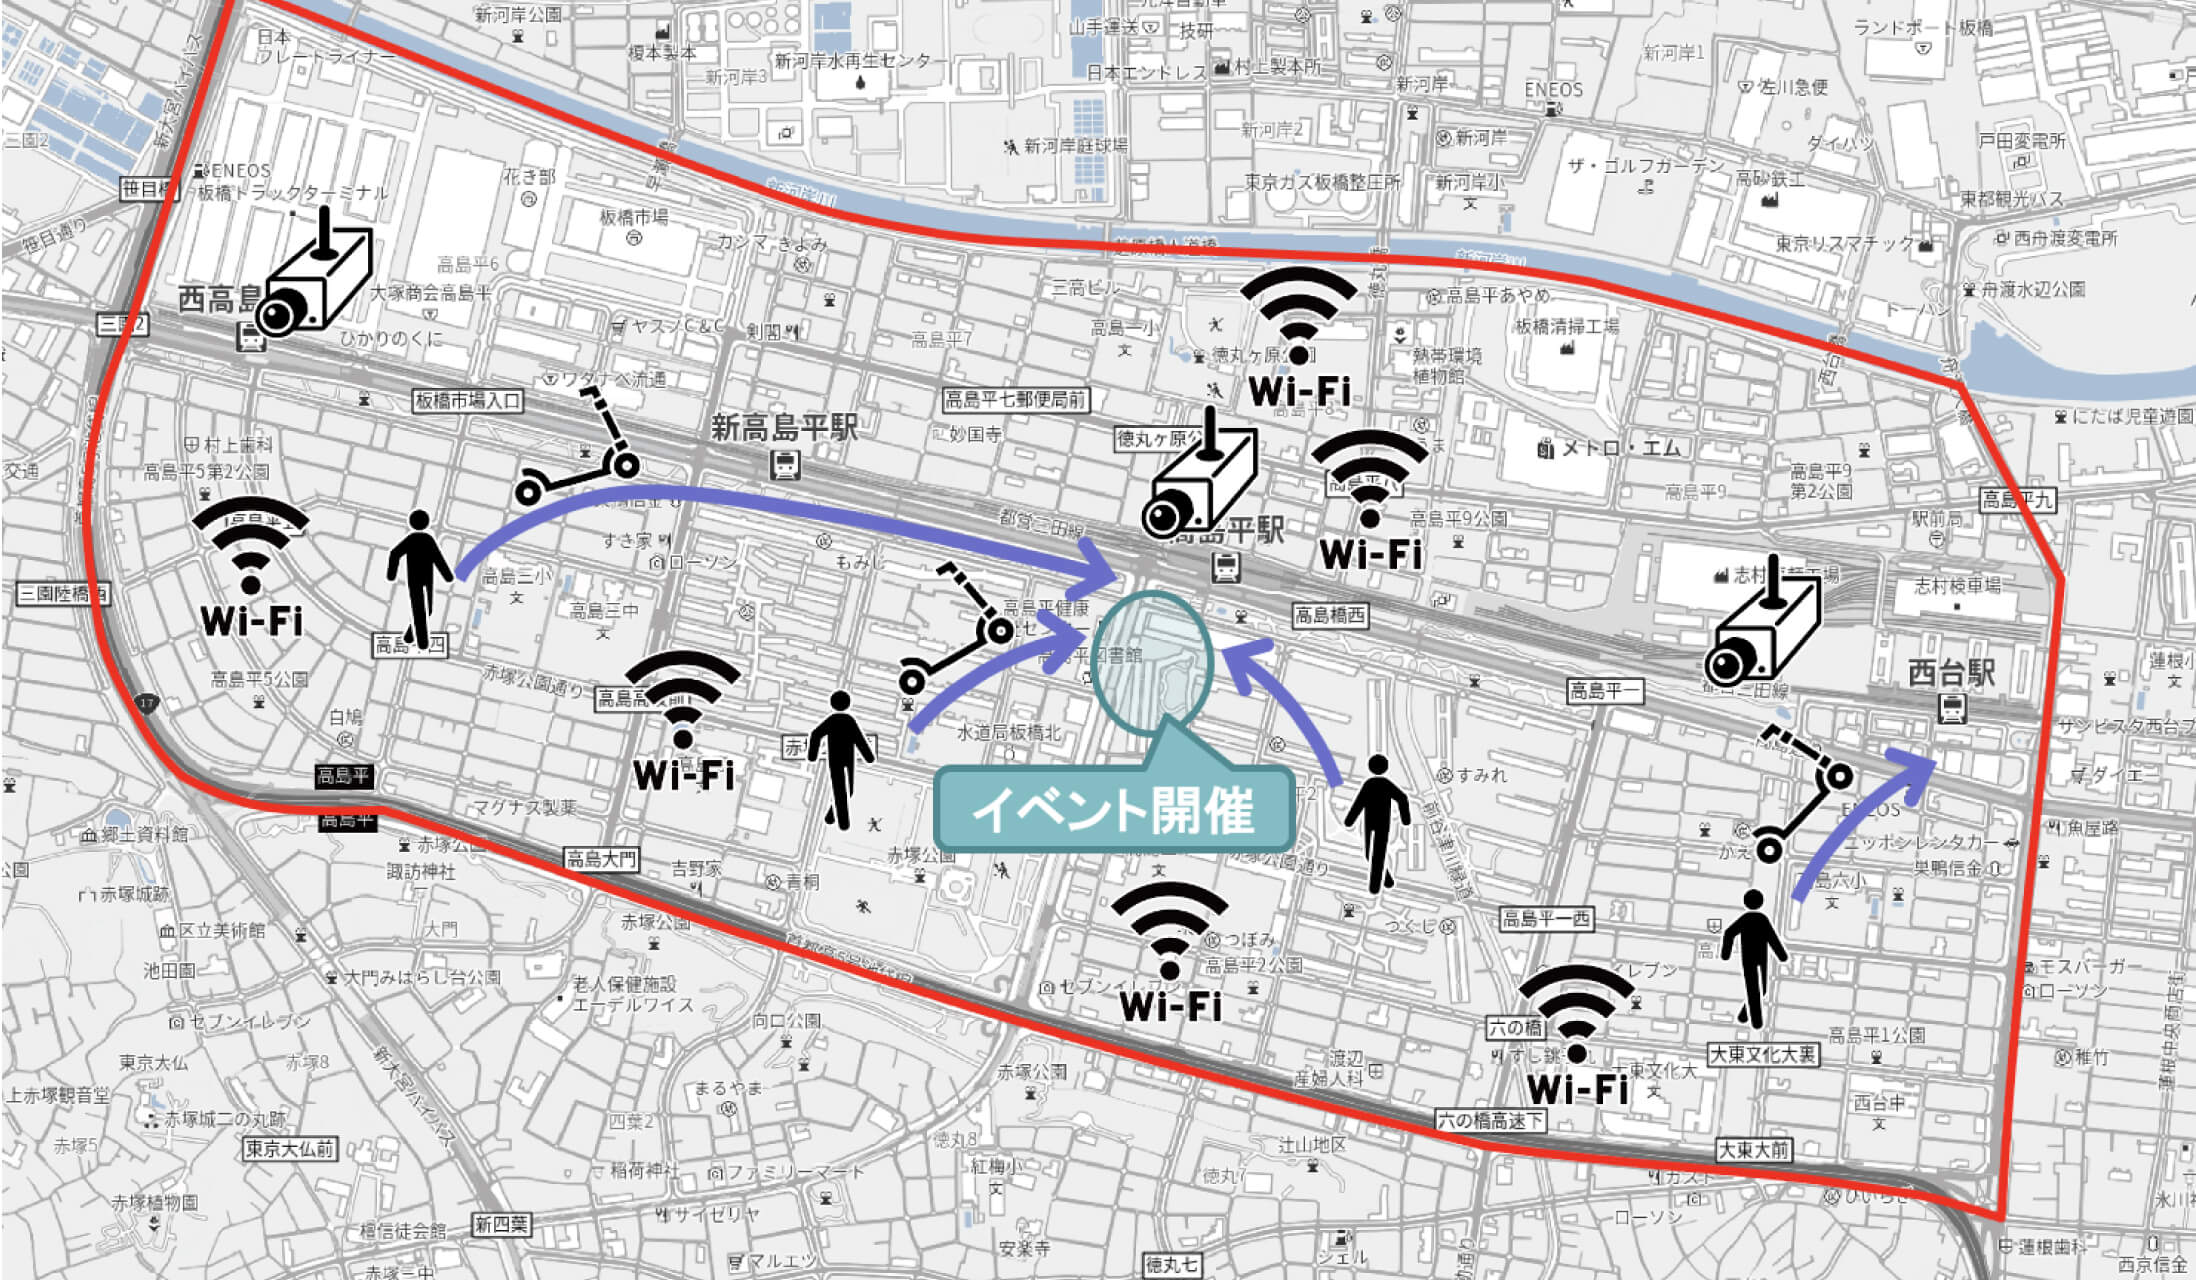 高島平エリア各所に設置されているセンサーの位置と人流を表した地図。イベント開催地に徒歩や電動キックボードを使って集まる様子が矢印で示されています。